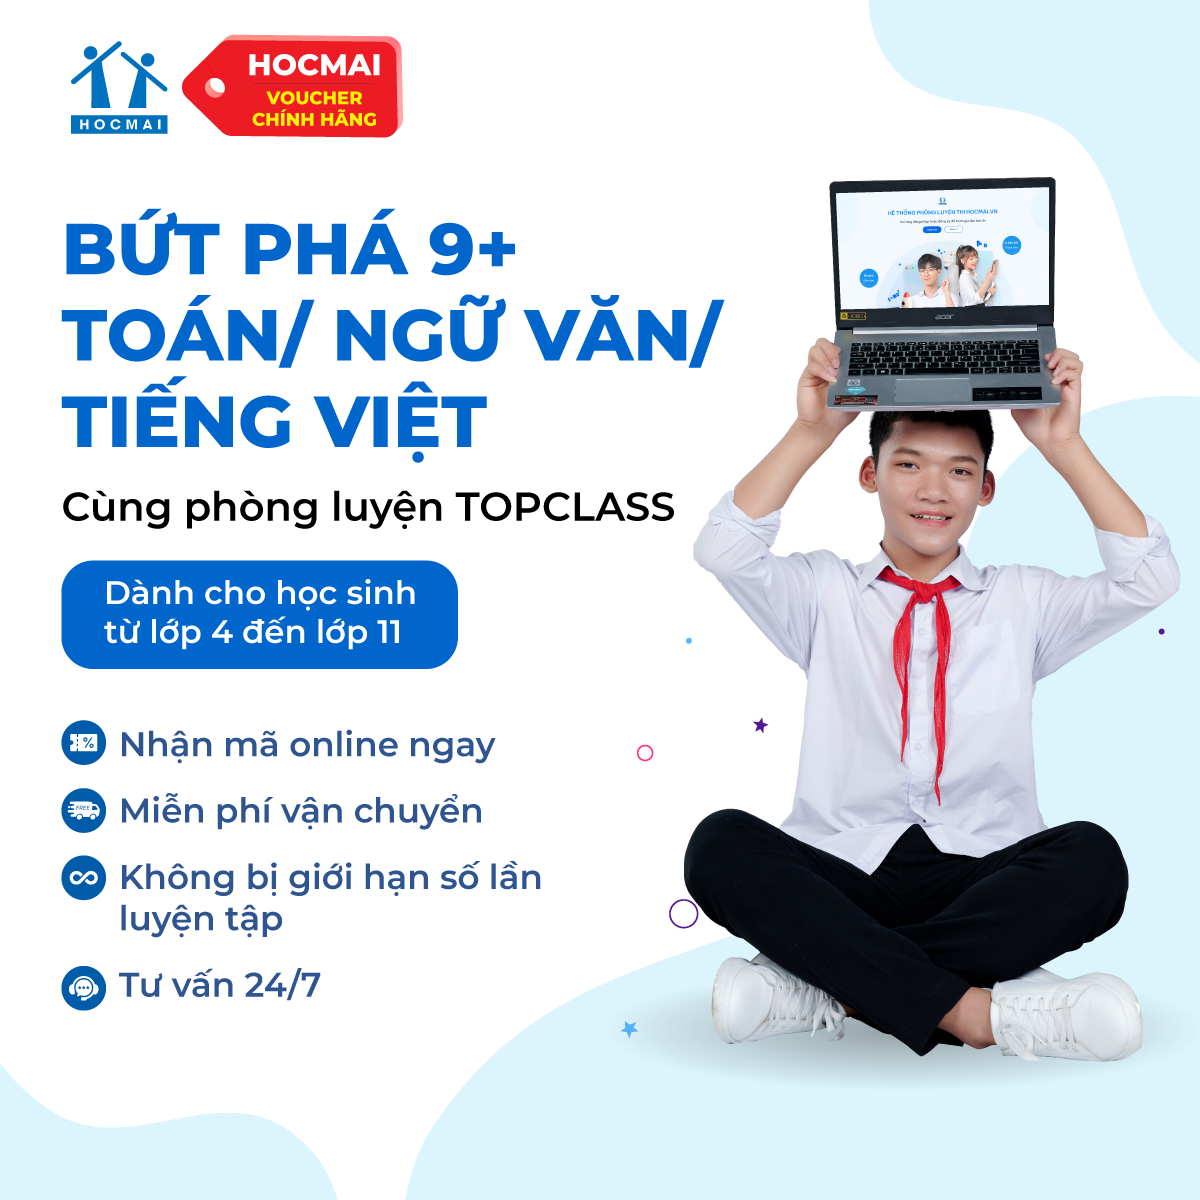 HOCMAI - Phòng luyện TOPCLASS môn Toán, Tiếng Việt/ Ngữ Văn từ lớp 4 đến lớp 11 - Gói 12 tháng- Toàn quốc [Voucher]